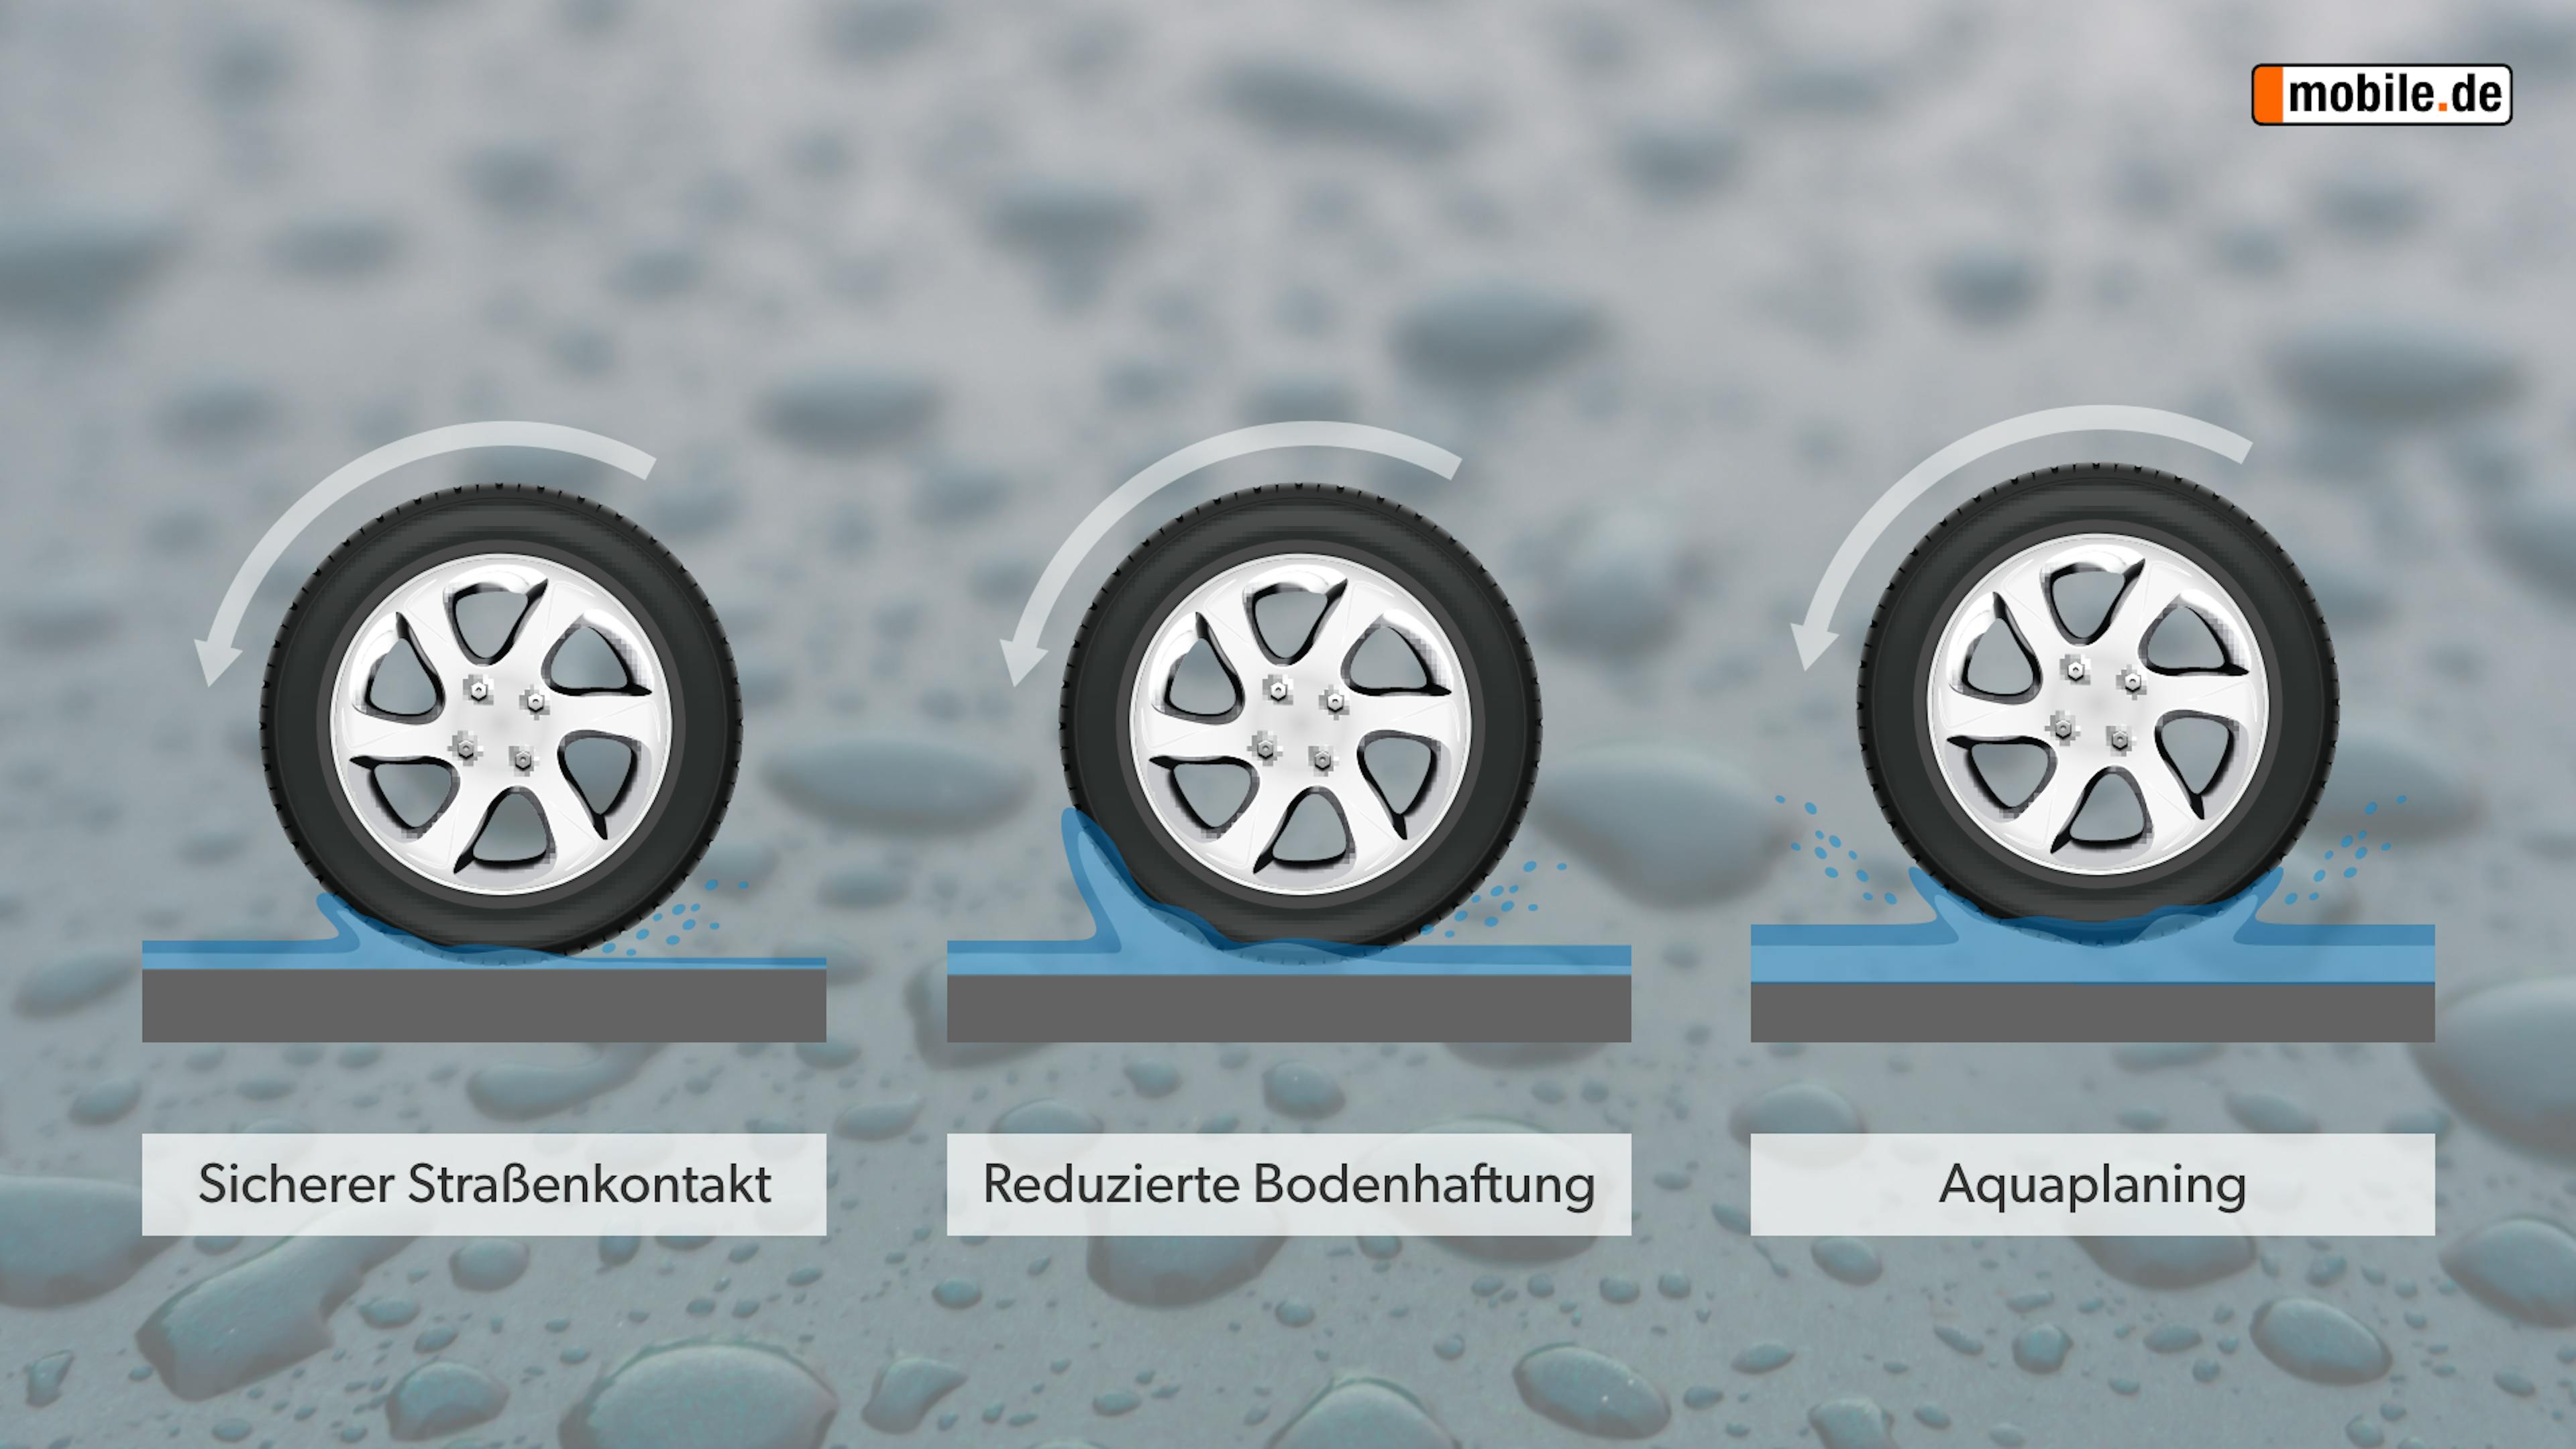 Eine Abbildung mit drei Reifen in verschiedenen Situationen: beim sicheren Straßenkontakt, bei reduzierter Bodenhaftung und bei Aquaplaning.